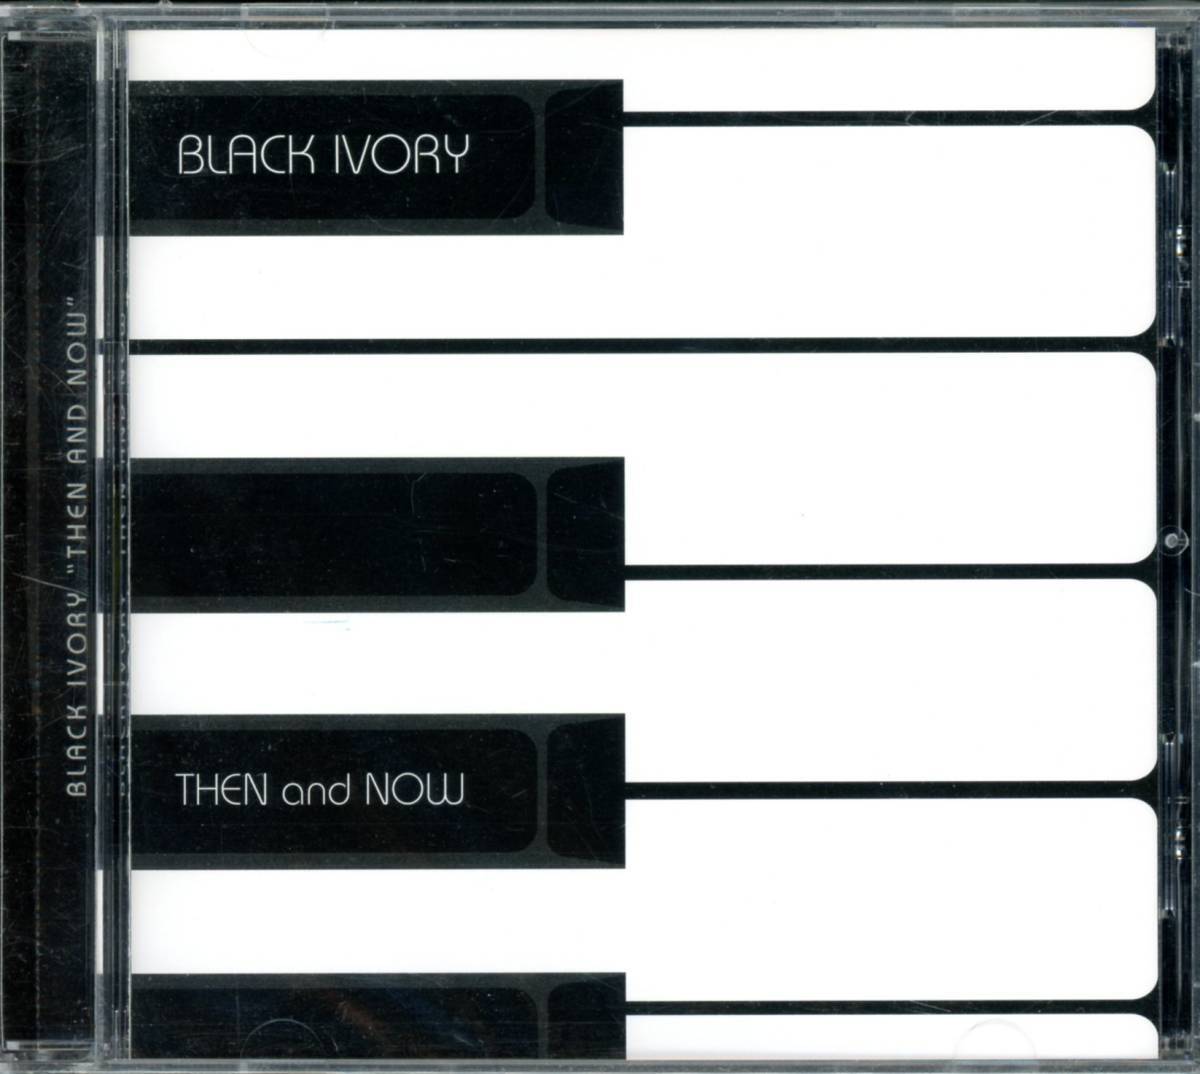 ダンクラ/ブギーディスコ/ファンク■BLACK IVORY / Then And Now (1984) 廃盤 世界唯一のCD化盤!! 隠れ名曲「Hold On Tight」収録!!の画像1